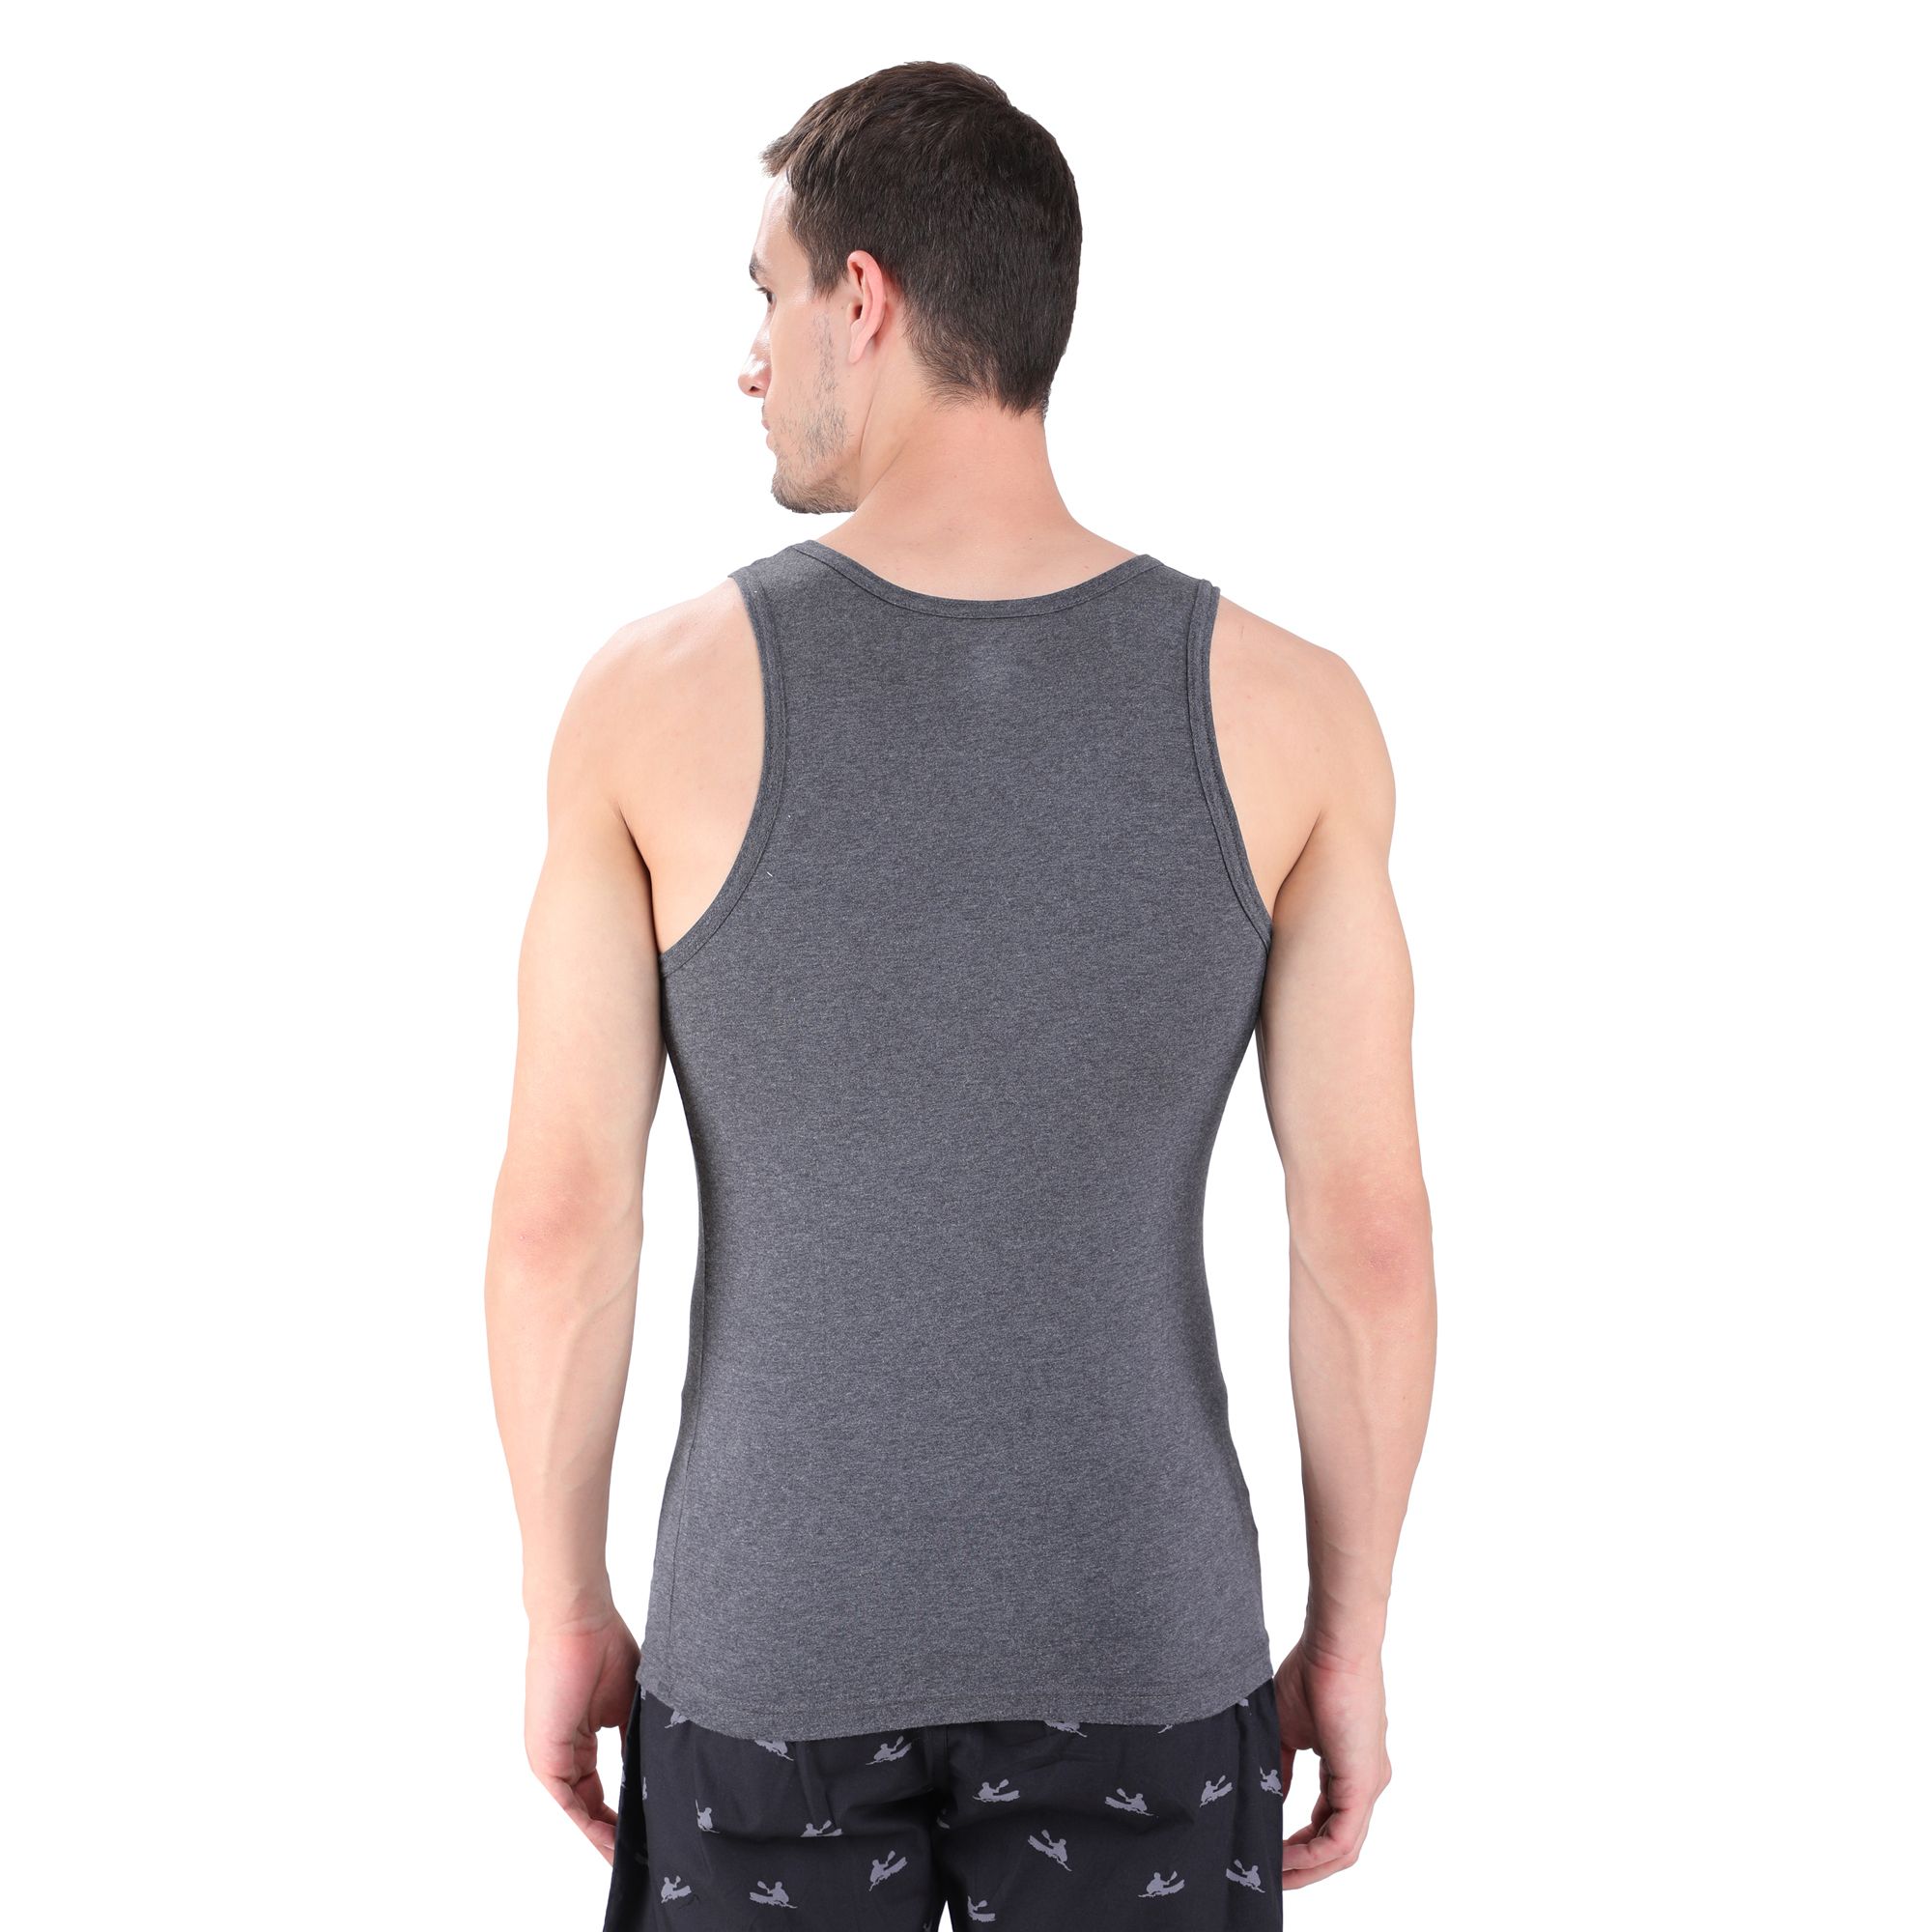 DGREY sleeveless vest for men